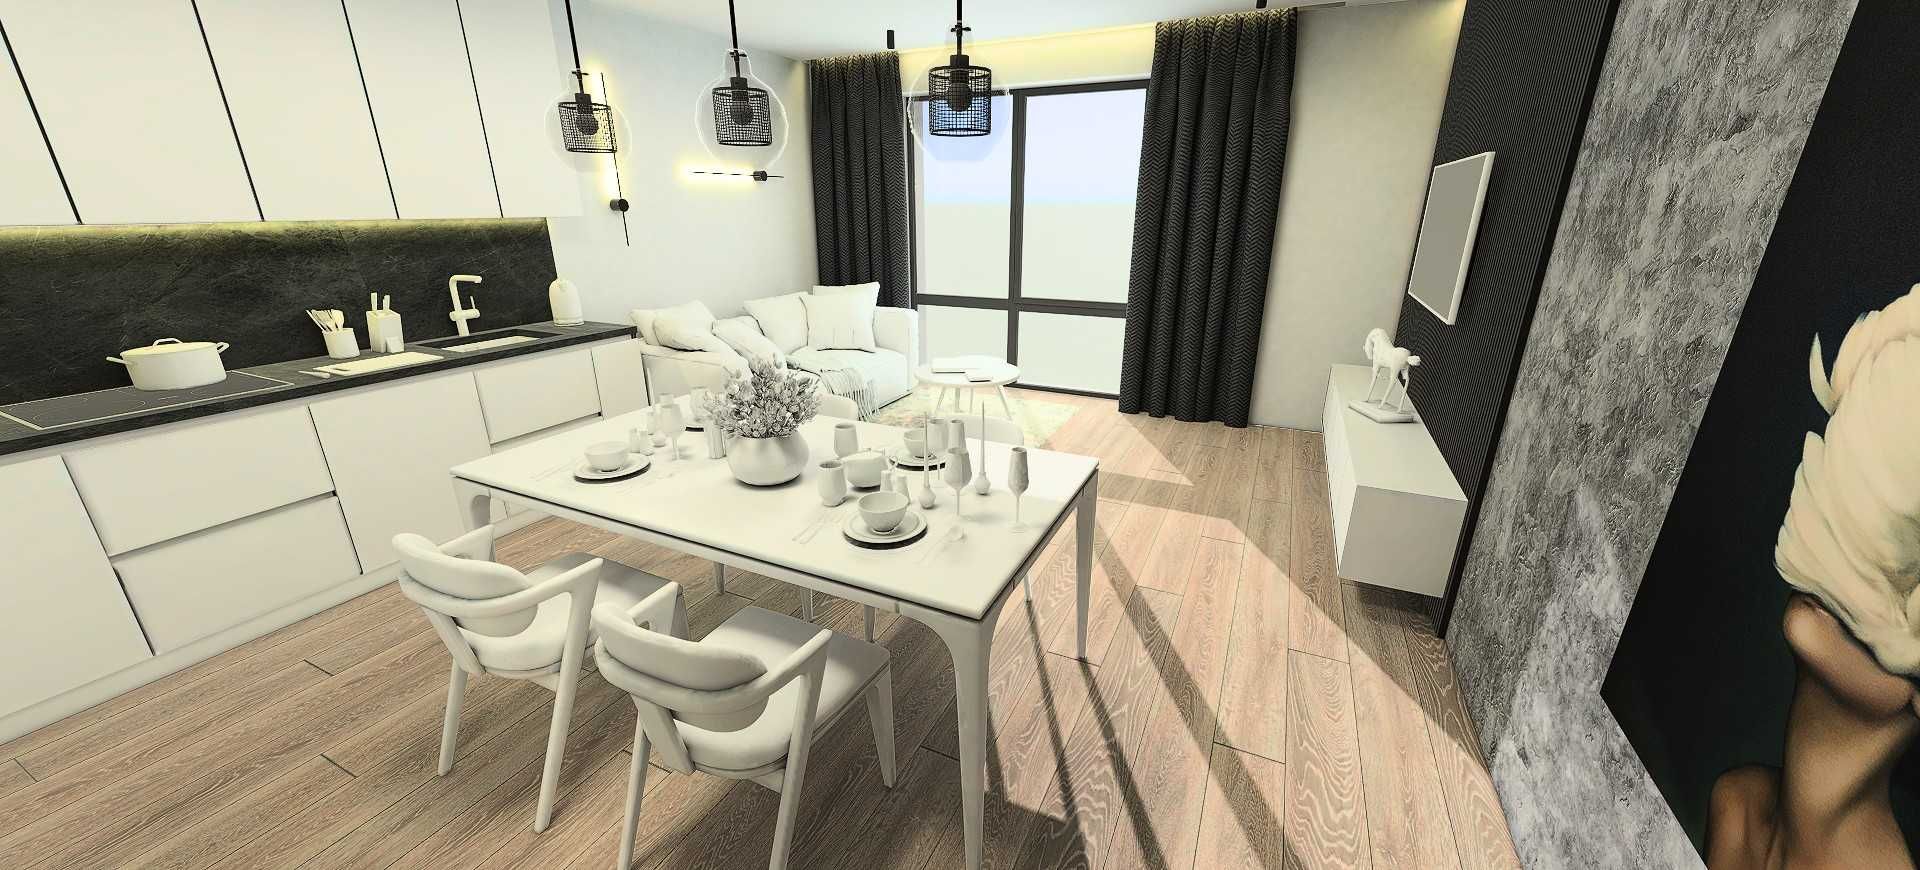 Продам квартиру 60м2 з просторною кухнею-вітальнею в Ірпені!